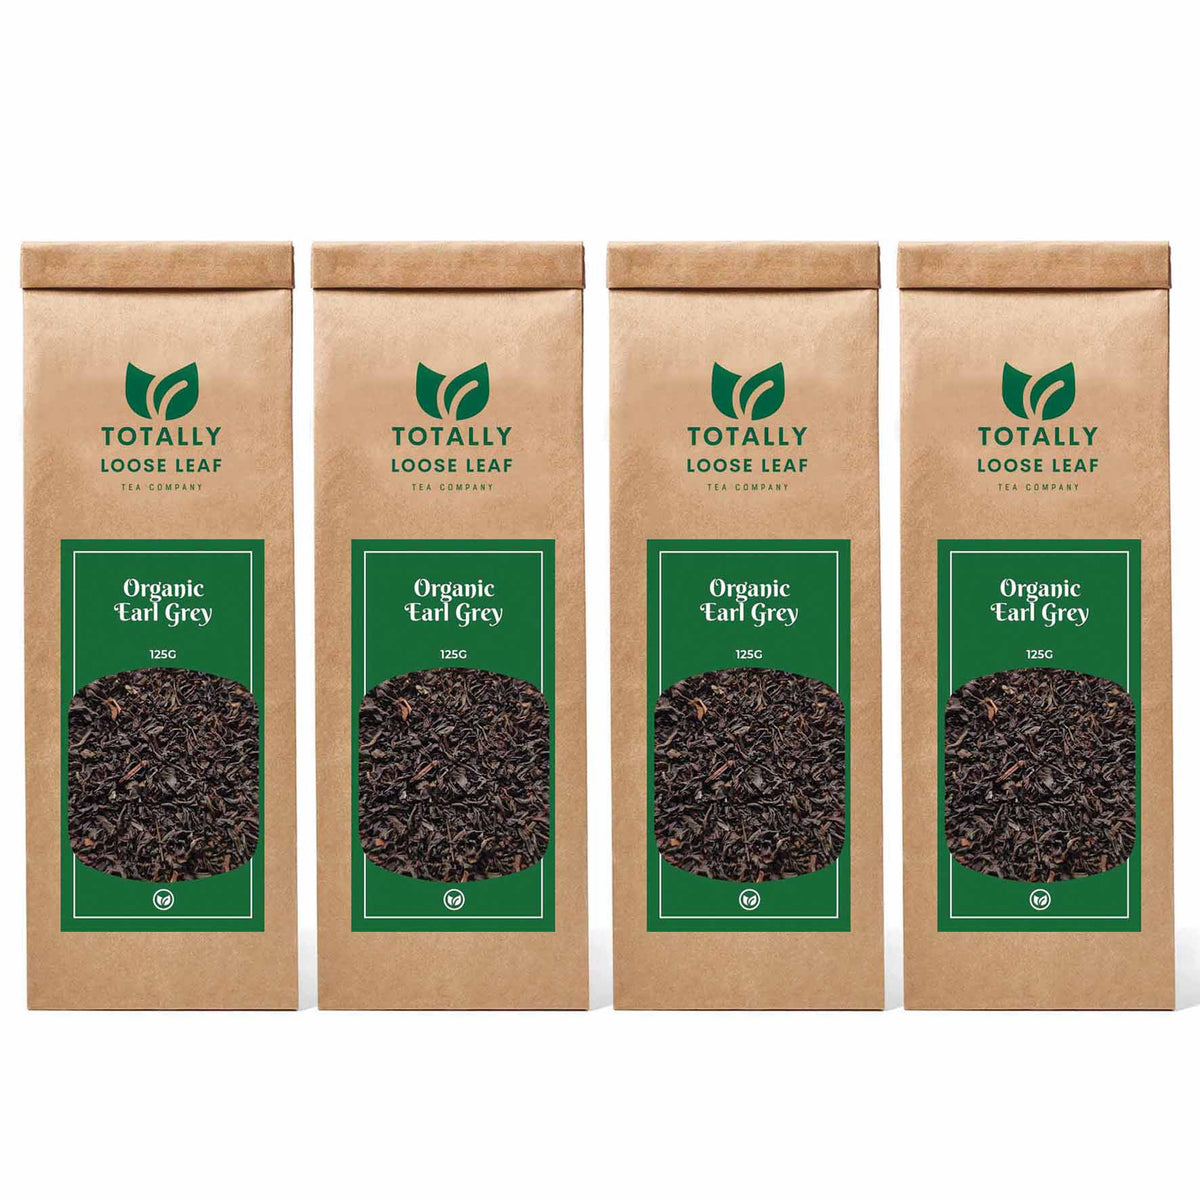 Organic Earl Grey Breakfast Loose Leaf Tea - four pouches